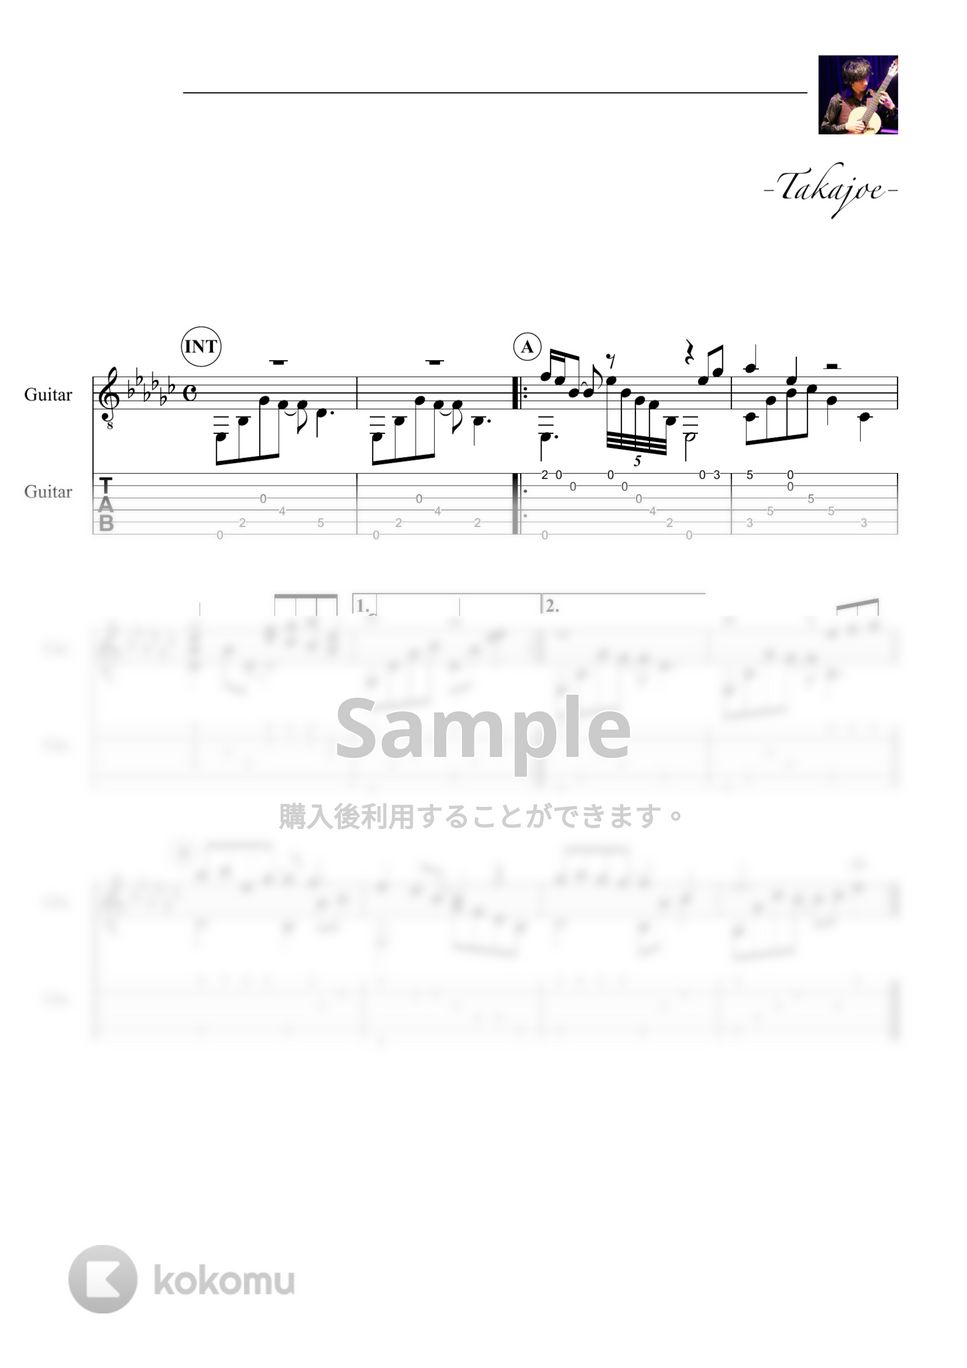 『NARUTO』 - 哀と悲 Sadness and Sorrow (Short Ver.) by 鷹城-Takajoe-